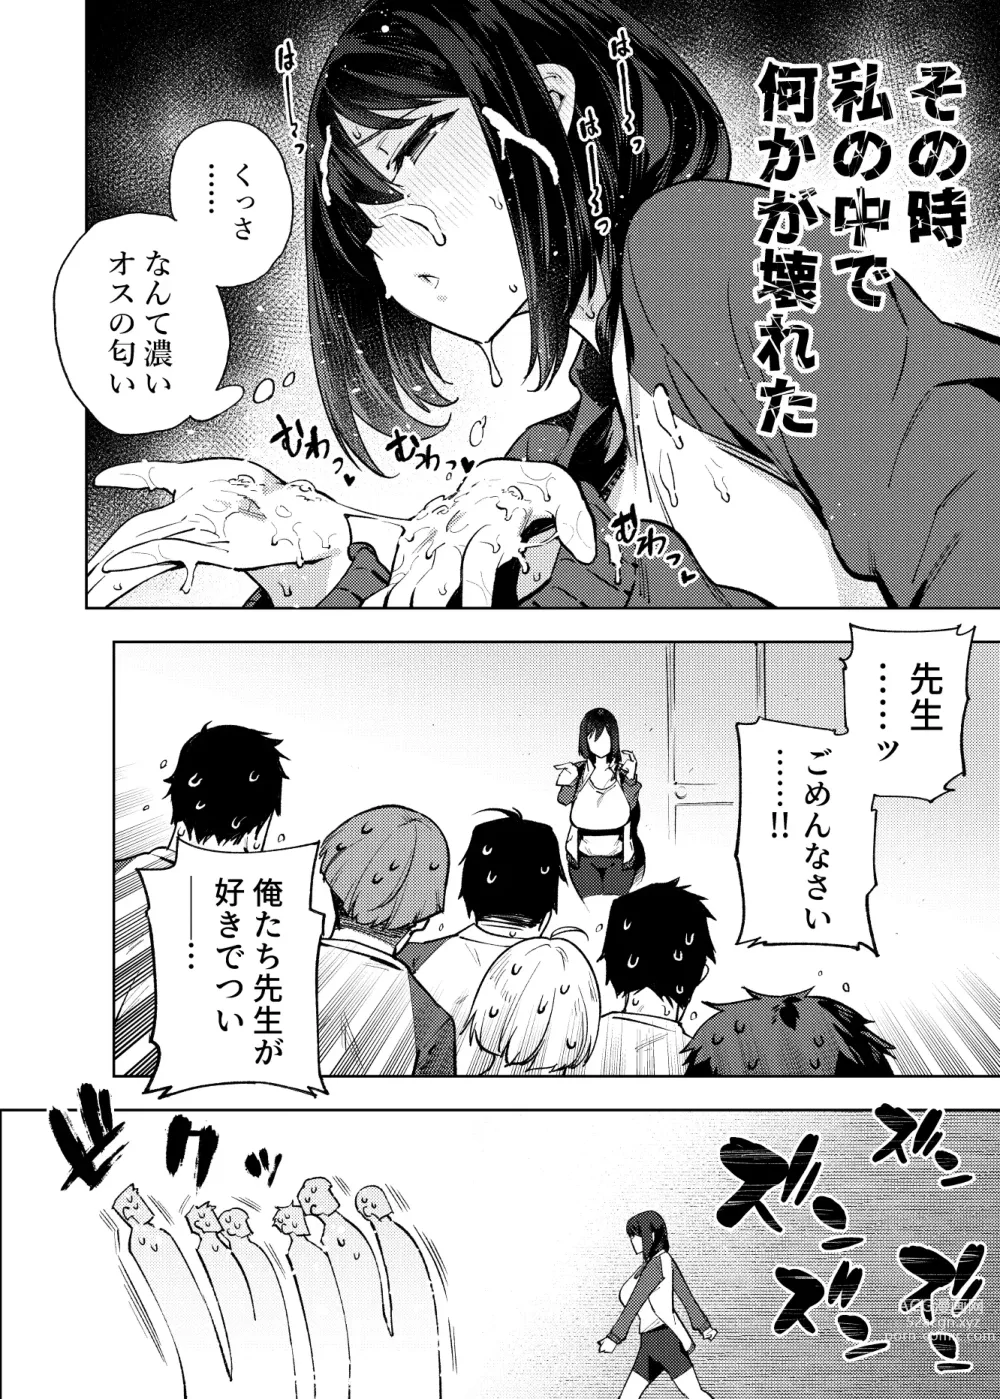 Page 17 of doujinshi Komori sensei wa komoranai